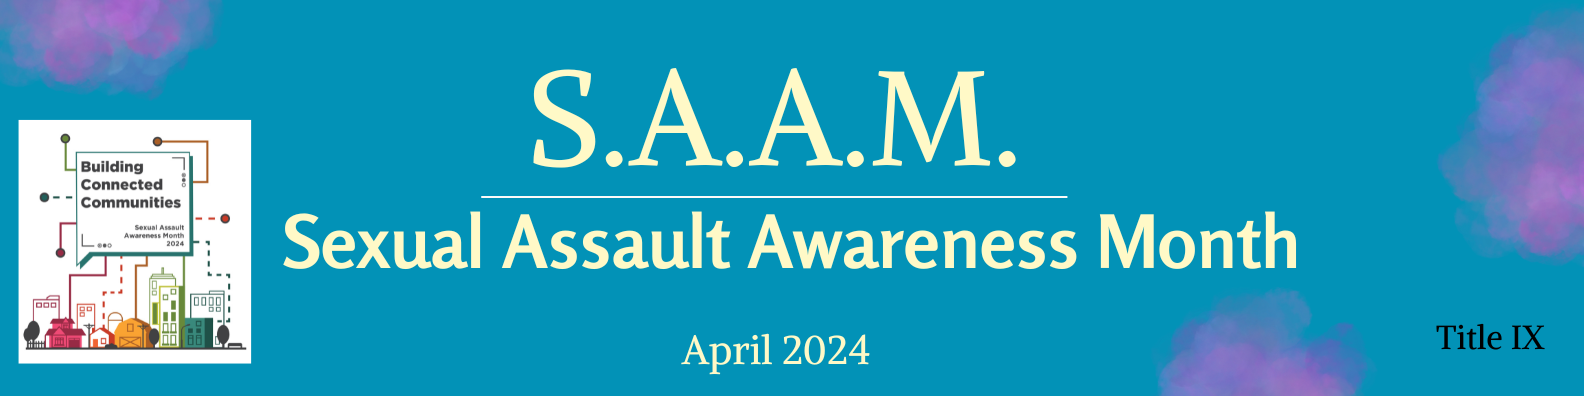 Sexual Assault Awareness Month begins April 1